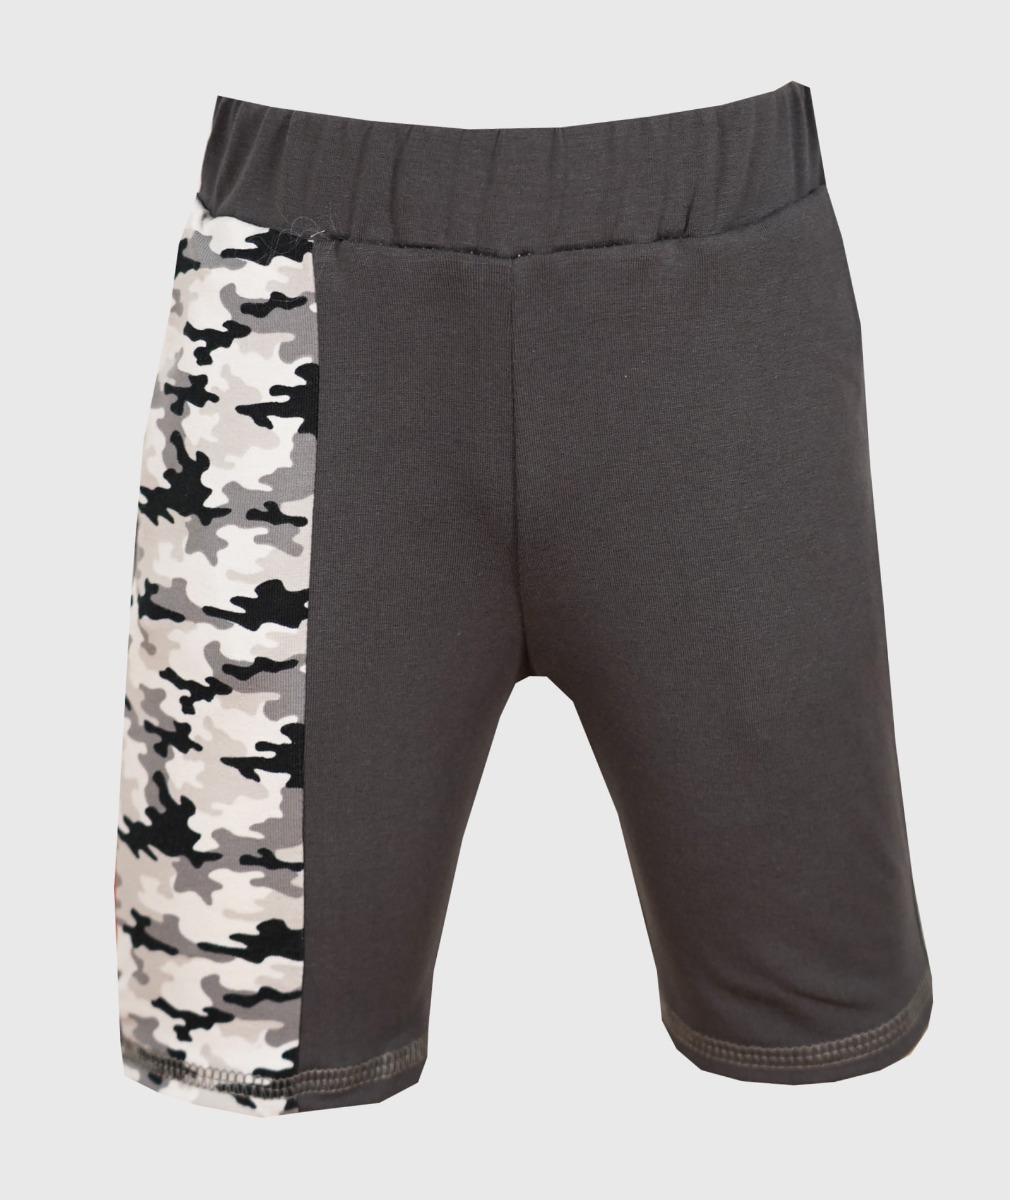 Short Pants Pockets Camouflage Grey von iELM